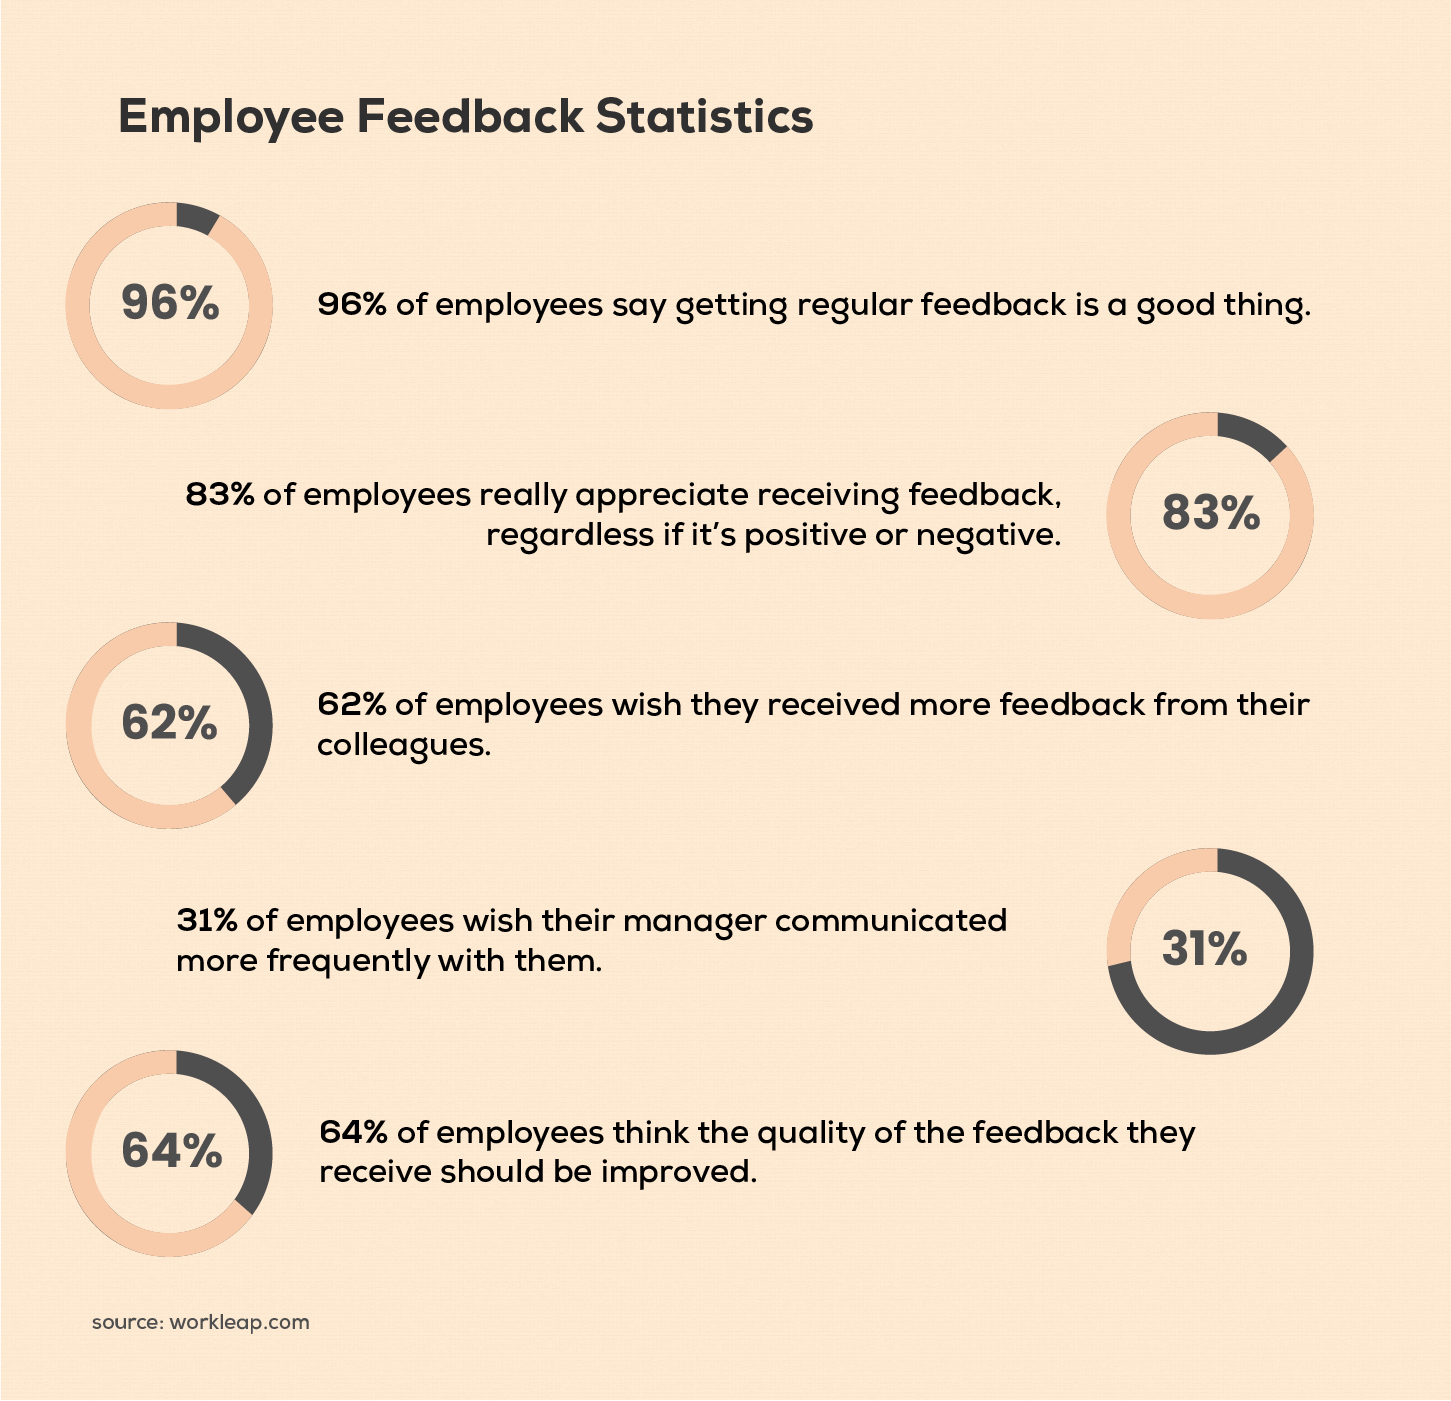 Employee Feedback Statistics